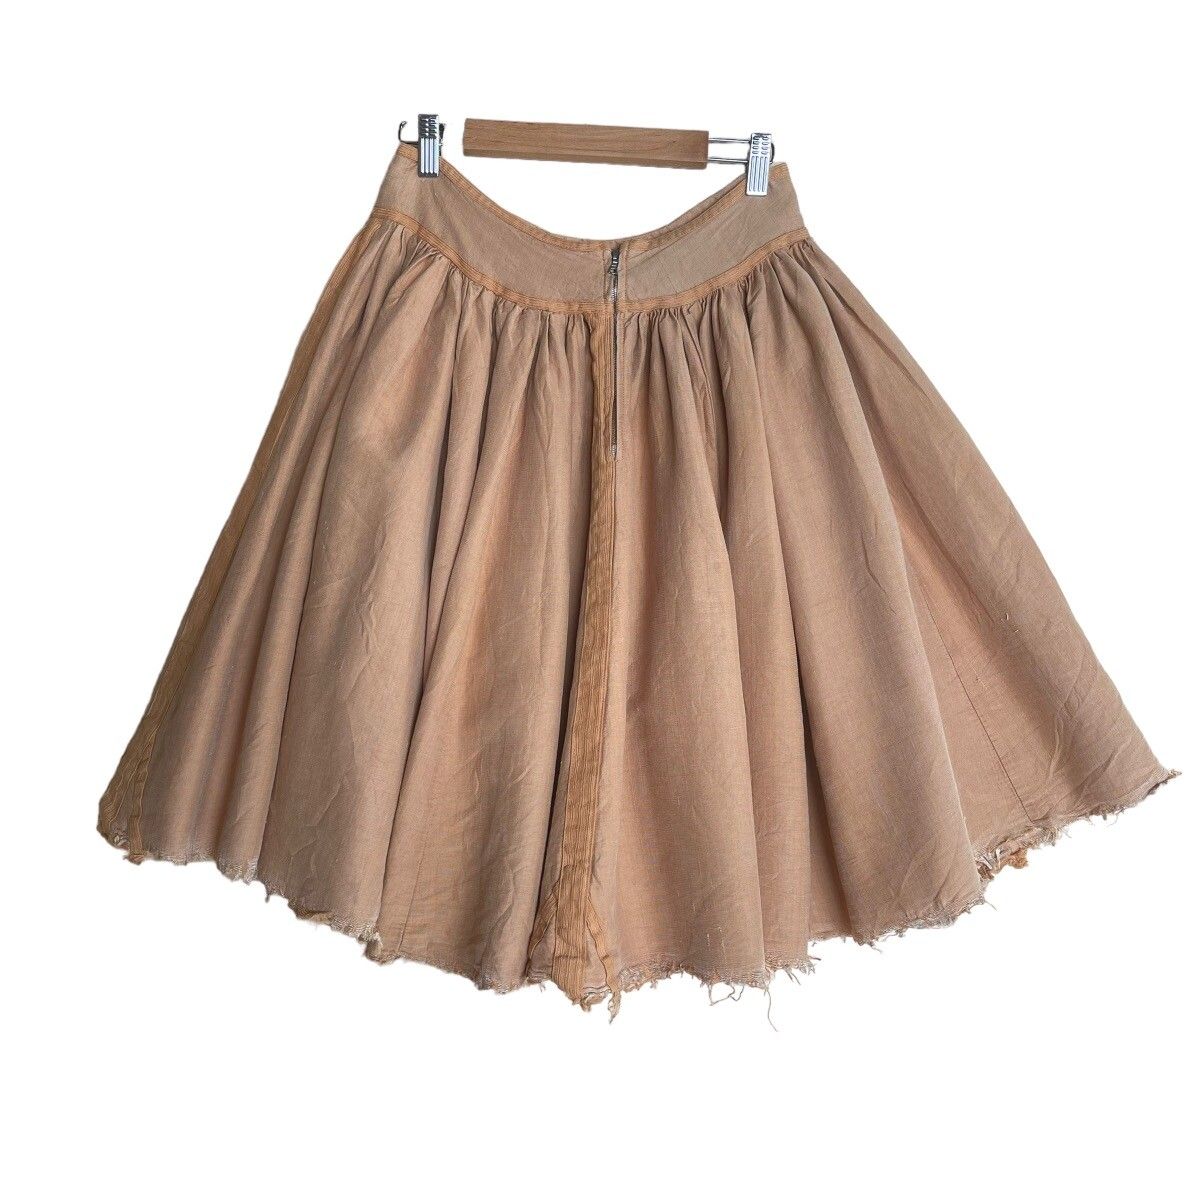 ⚡️QUICK SALE⚡️Dries Van Noten Distressed Skirt - 2